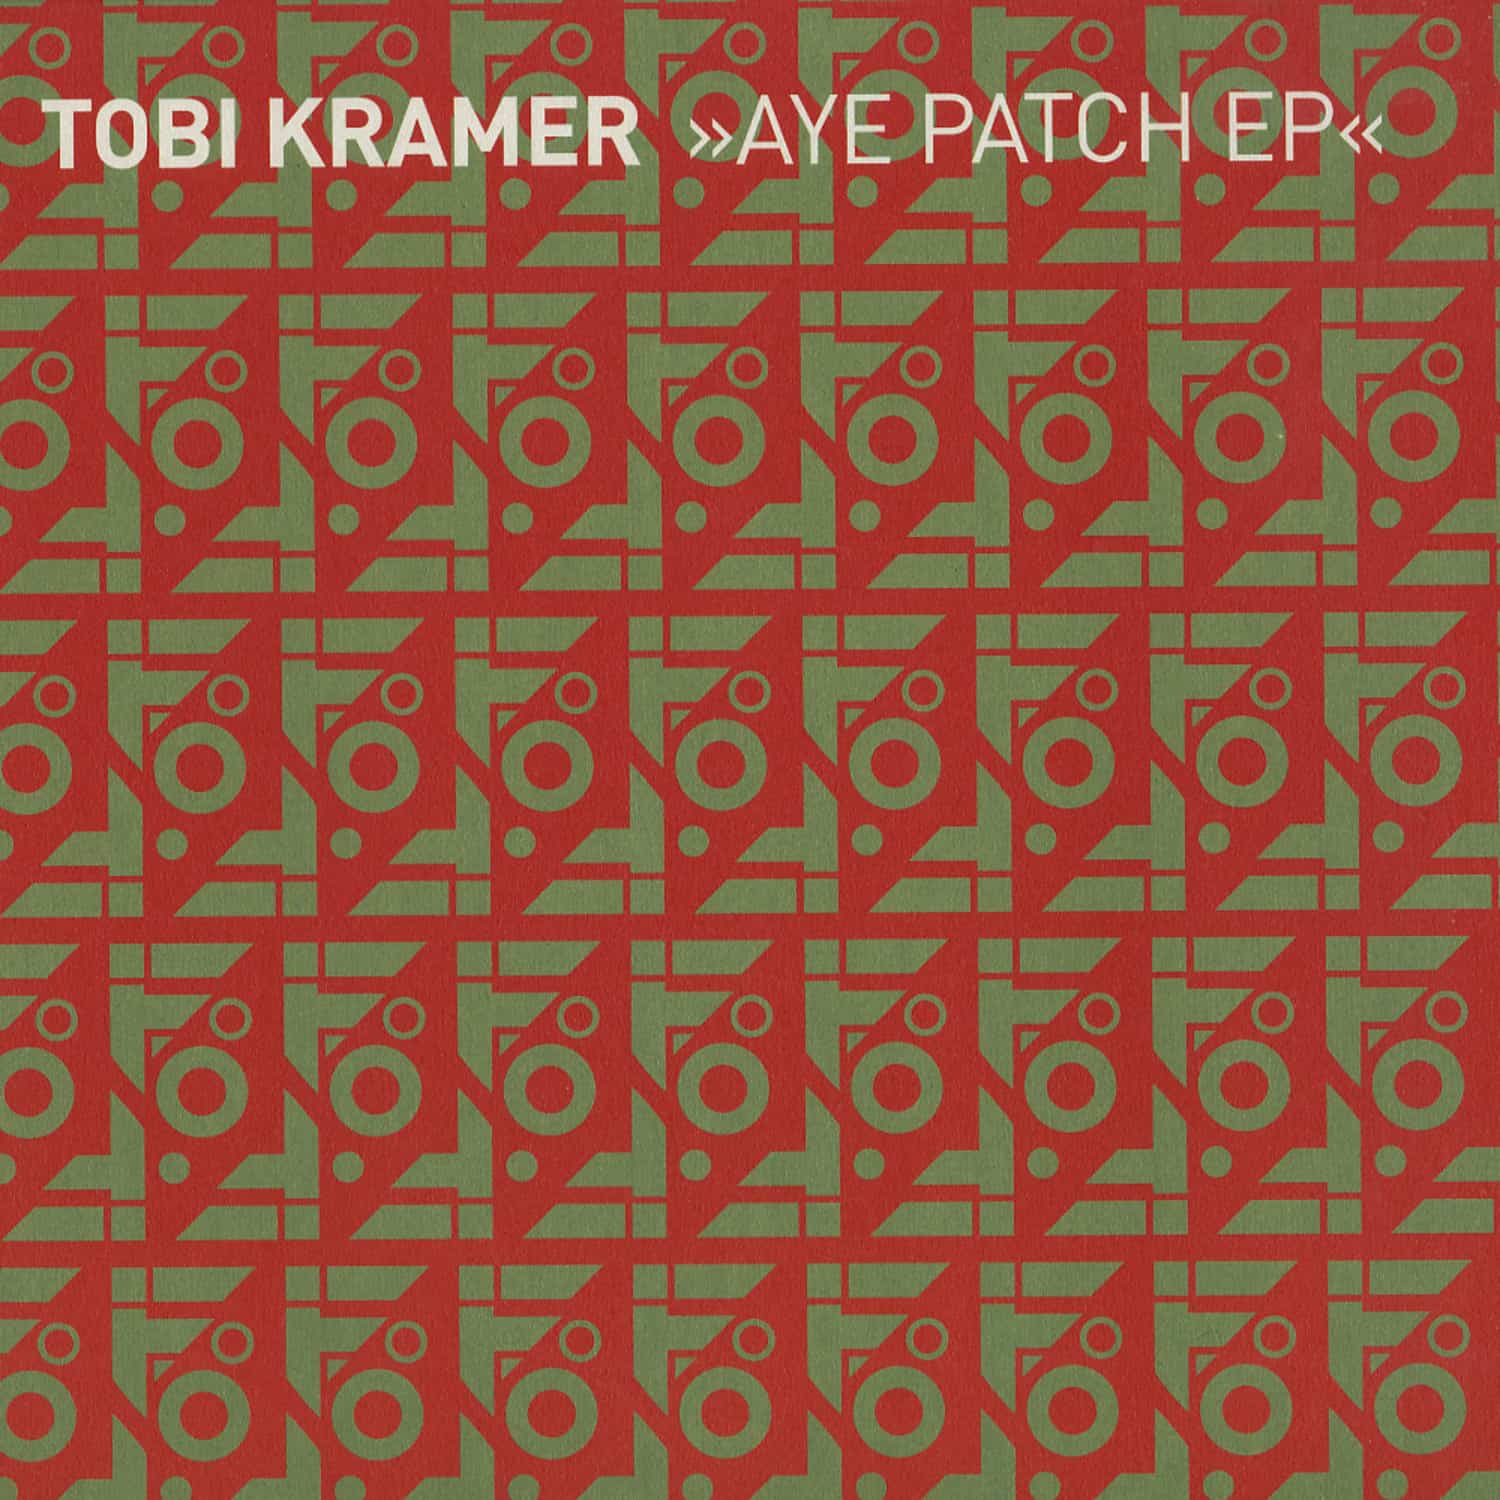 Tobi Kramer - AYE PATCH EP